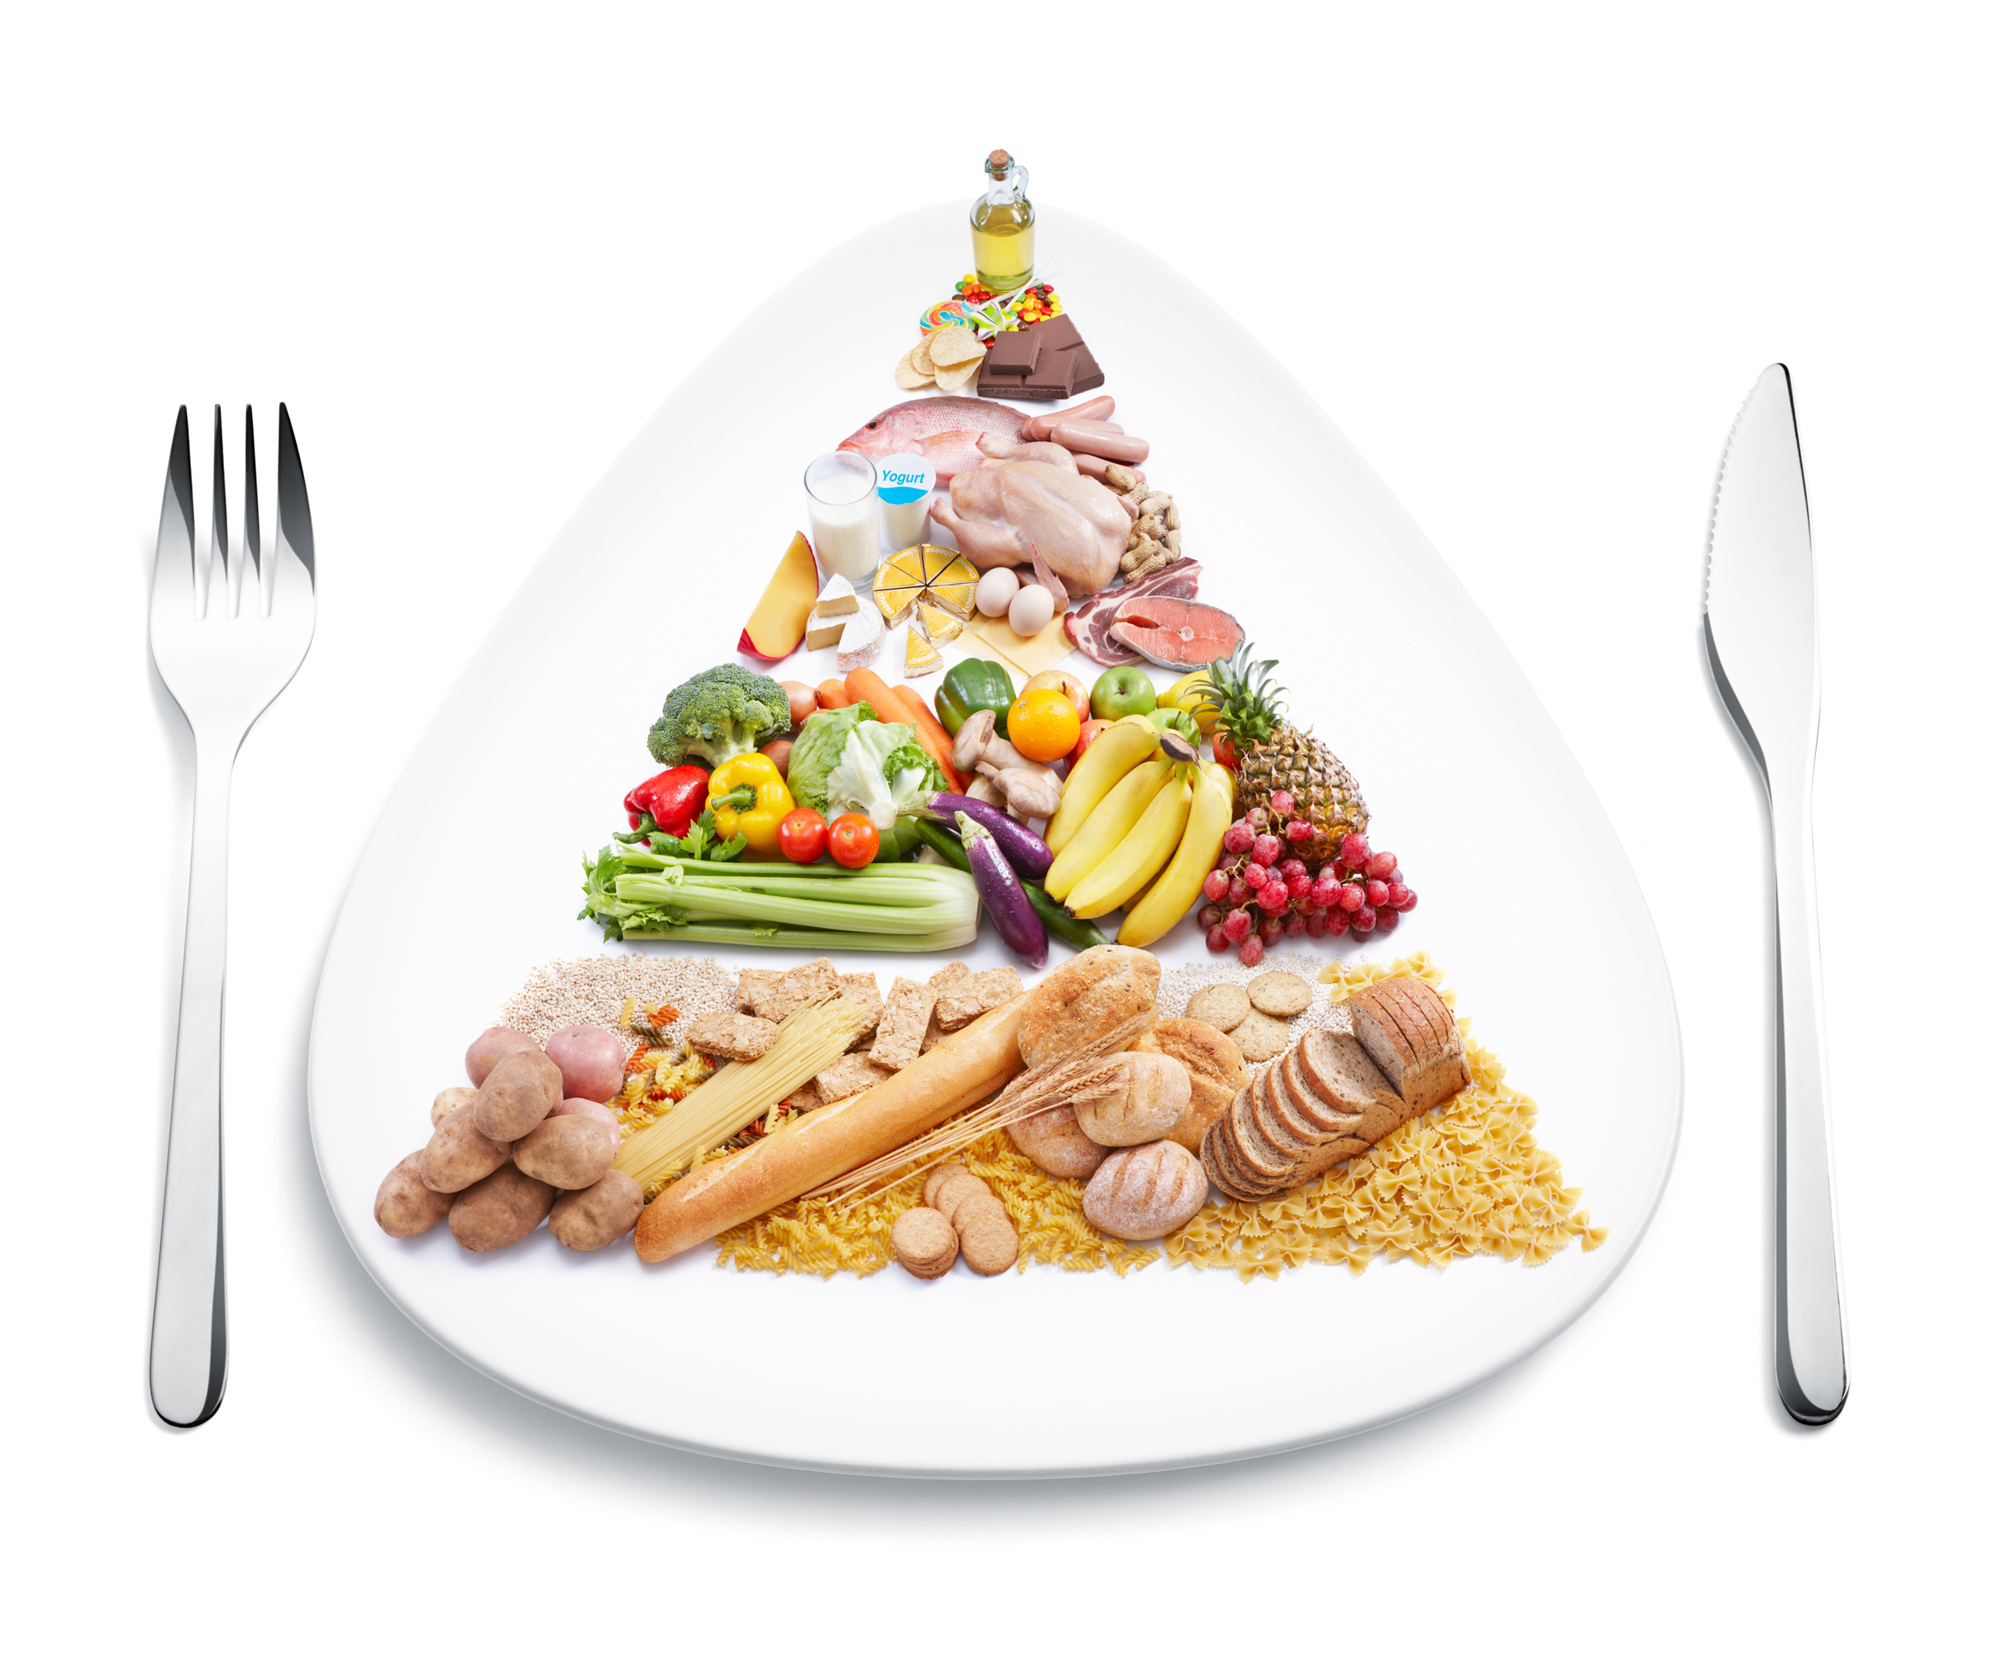 food pyramid on plate